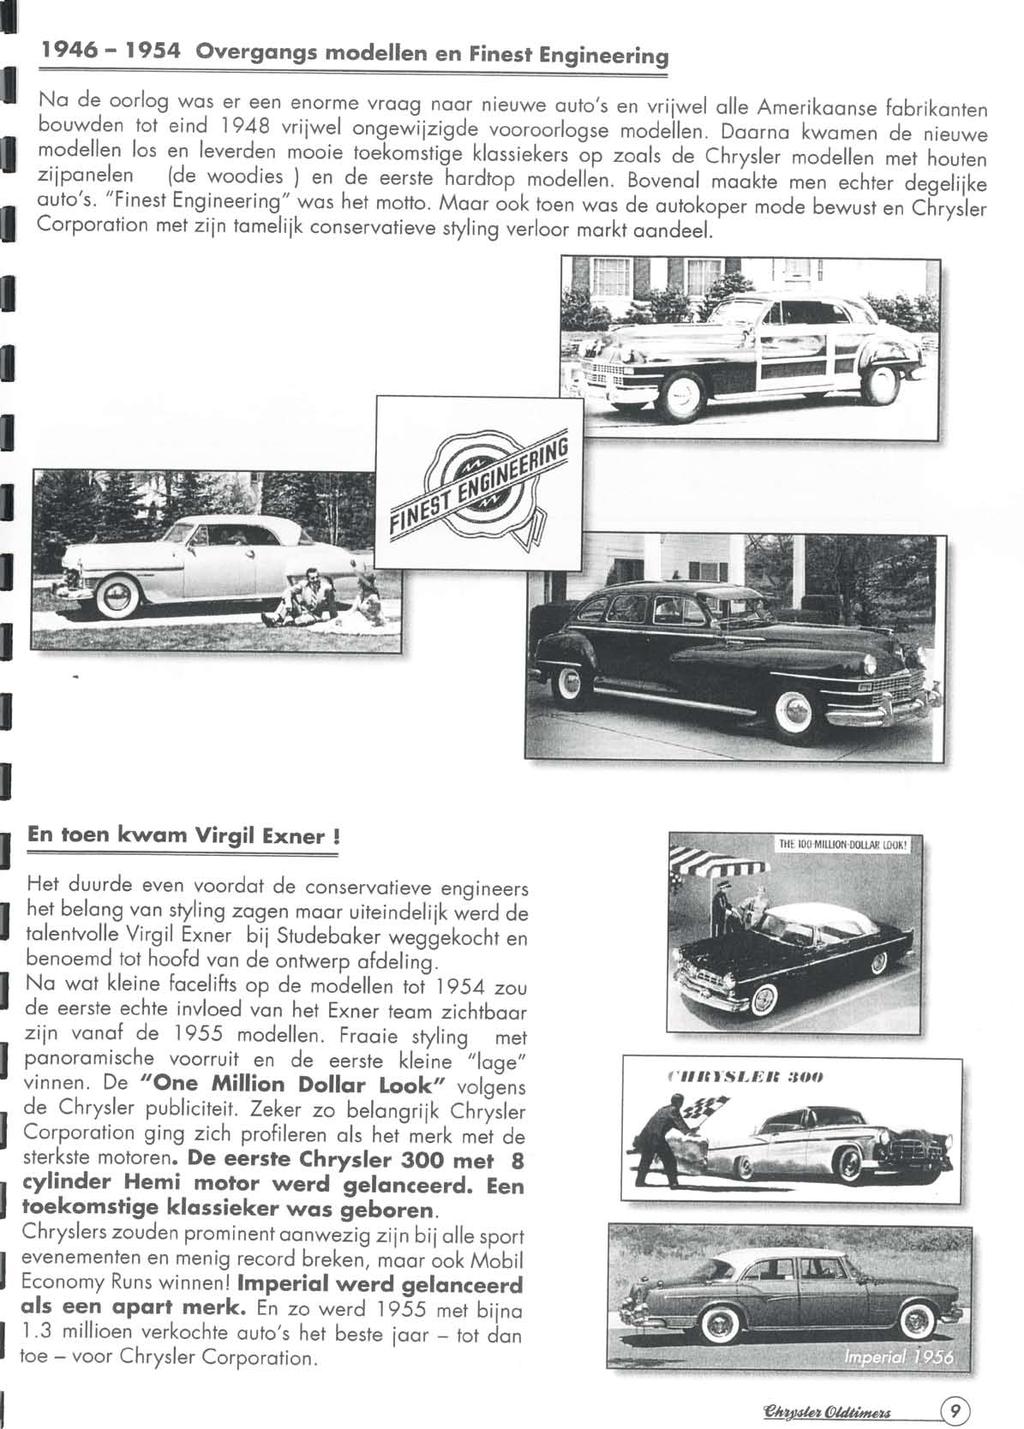 Beste deelnemers en belangstellenden, Hartelijk welkom op dit speciale eerbetoon aan Virgil Exner de flamboyante styling man voor de Chrysler merken van 1950 t/m eind 1961 toen hij werd ontslagen,